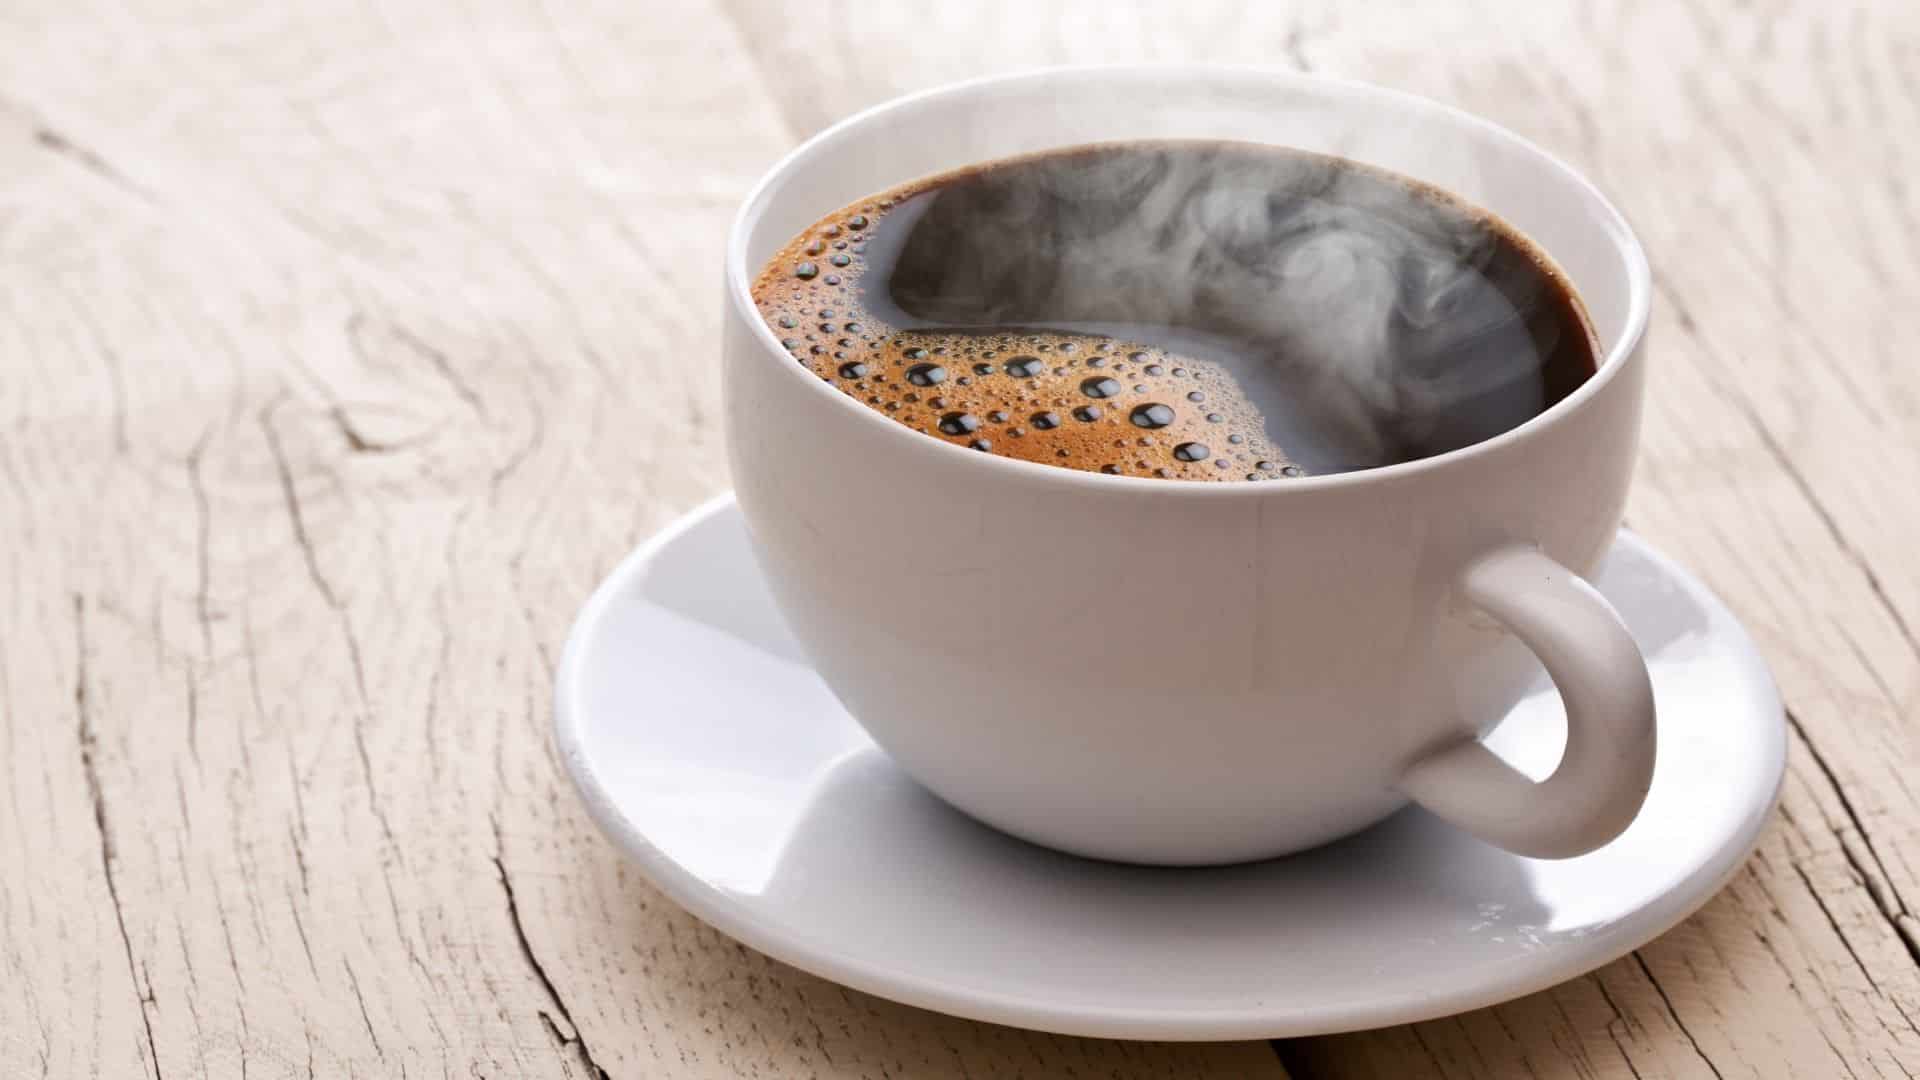 Вчені назвали несподівану користь кави для очей